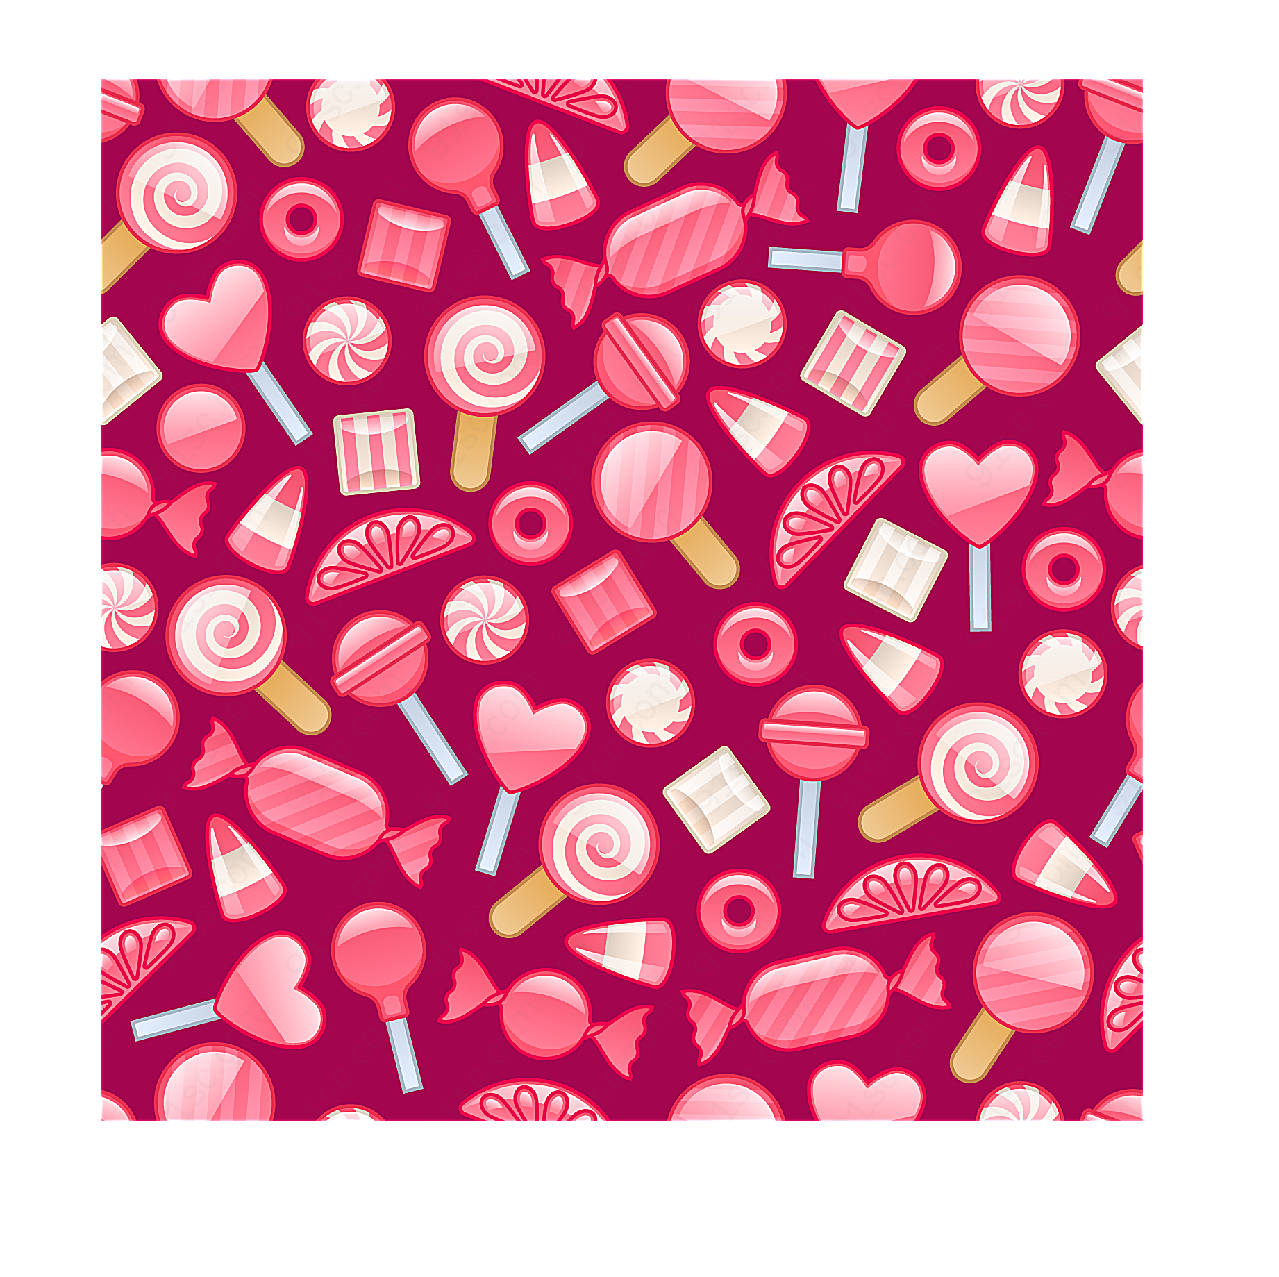 甜蜜糖果棒棒糖装饰图案矢量素材下载纹理边框